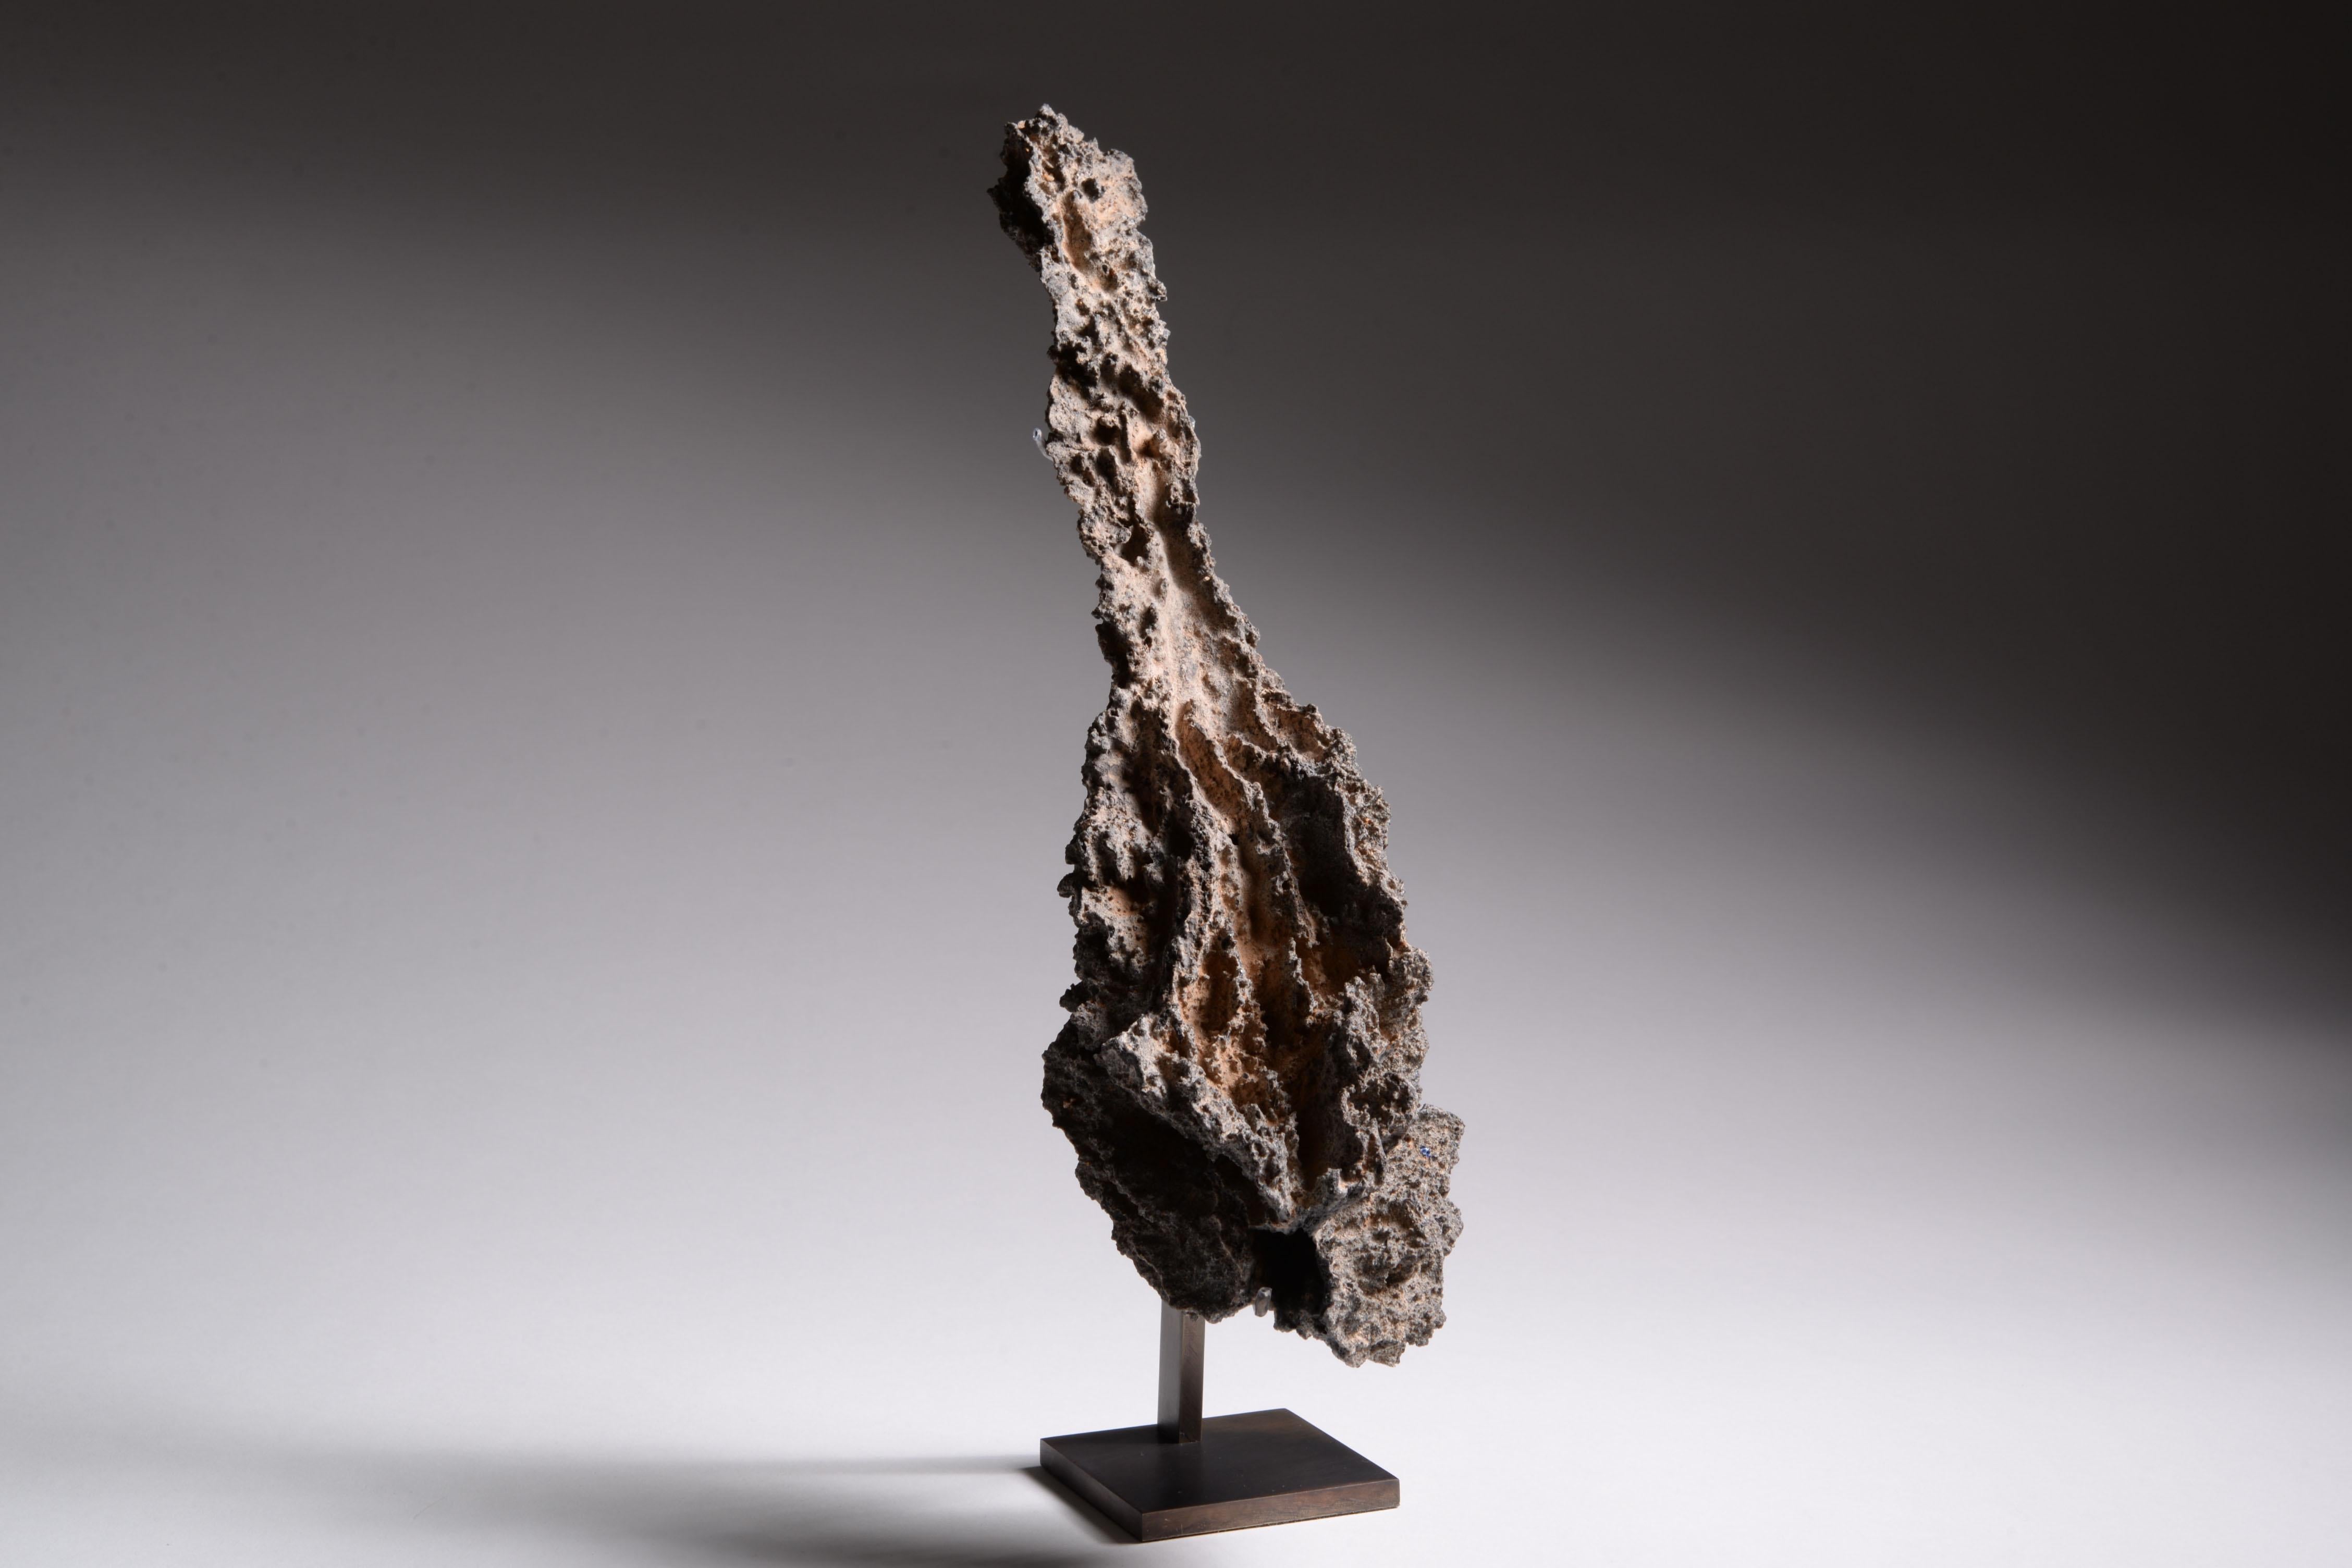 Un spécimen extraordinairement bien conservé de Fulgurite.
Lechatetierite tubulaire
Date de formation inconnue, récupérée dans le désert du Sahara, Algérie, vers 2006.

Cette remarquable sculpture naturelle a été formée en un dix millième de